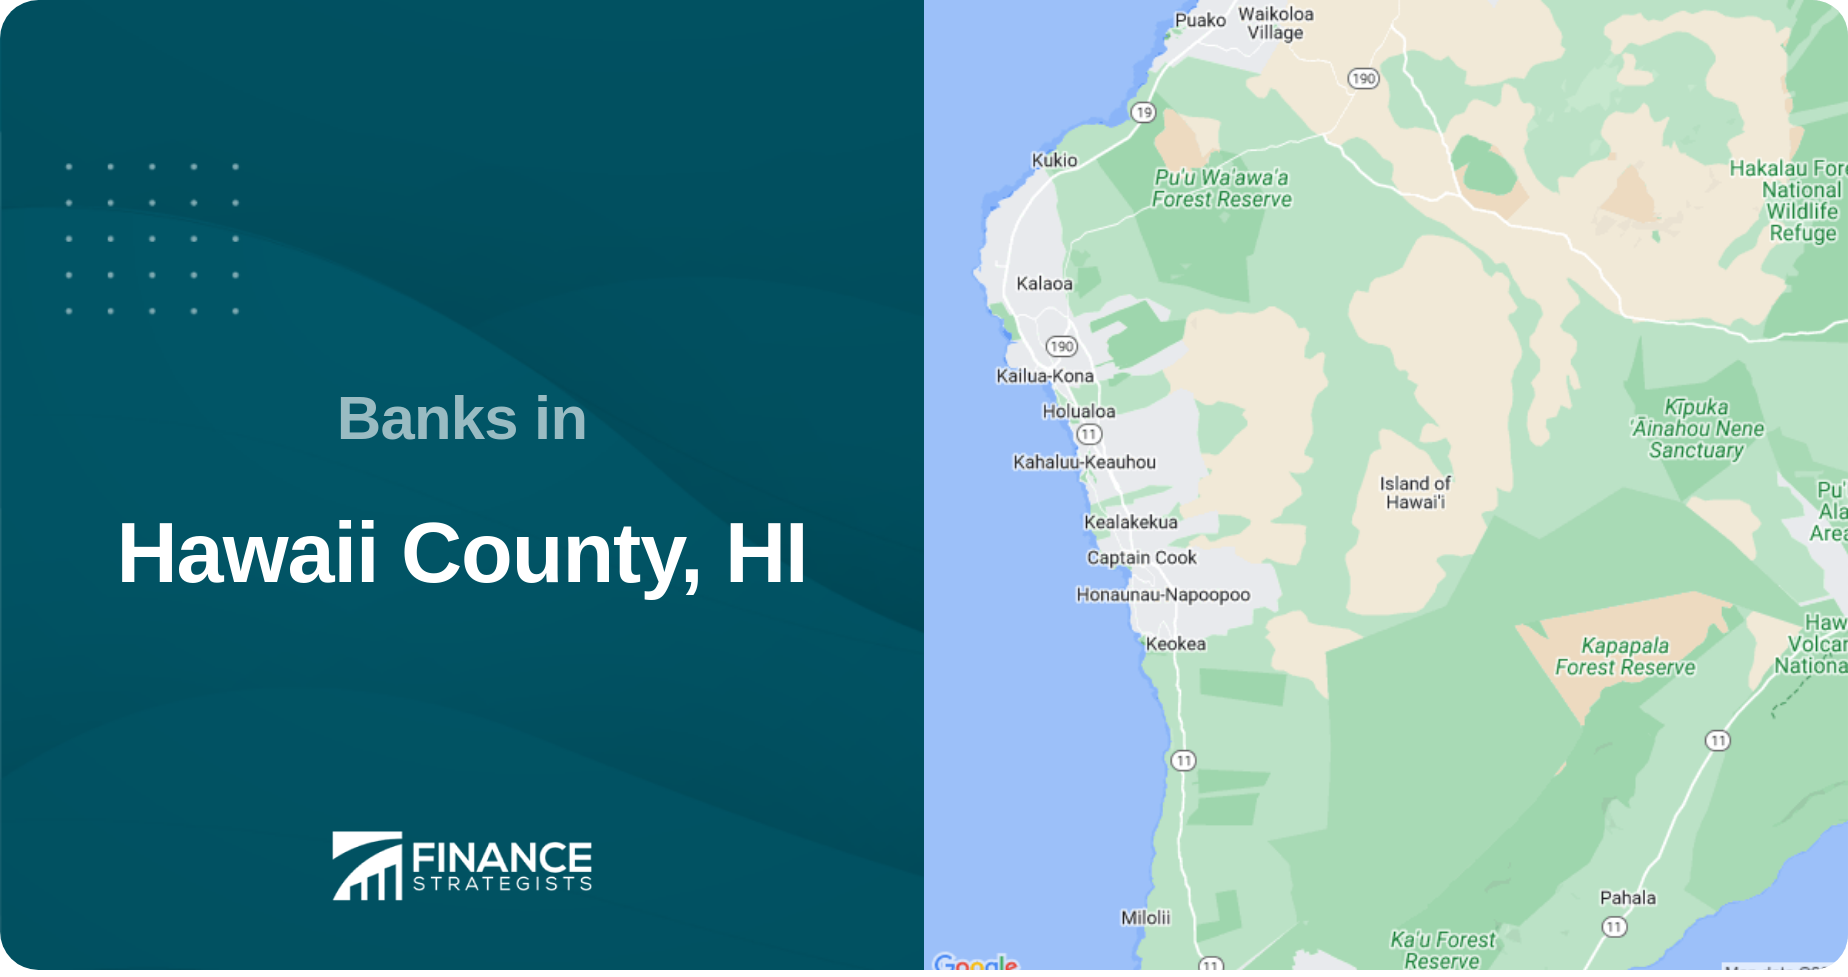 Banks in Hawaii County, HI